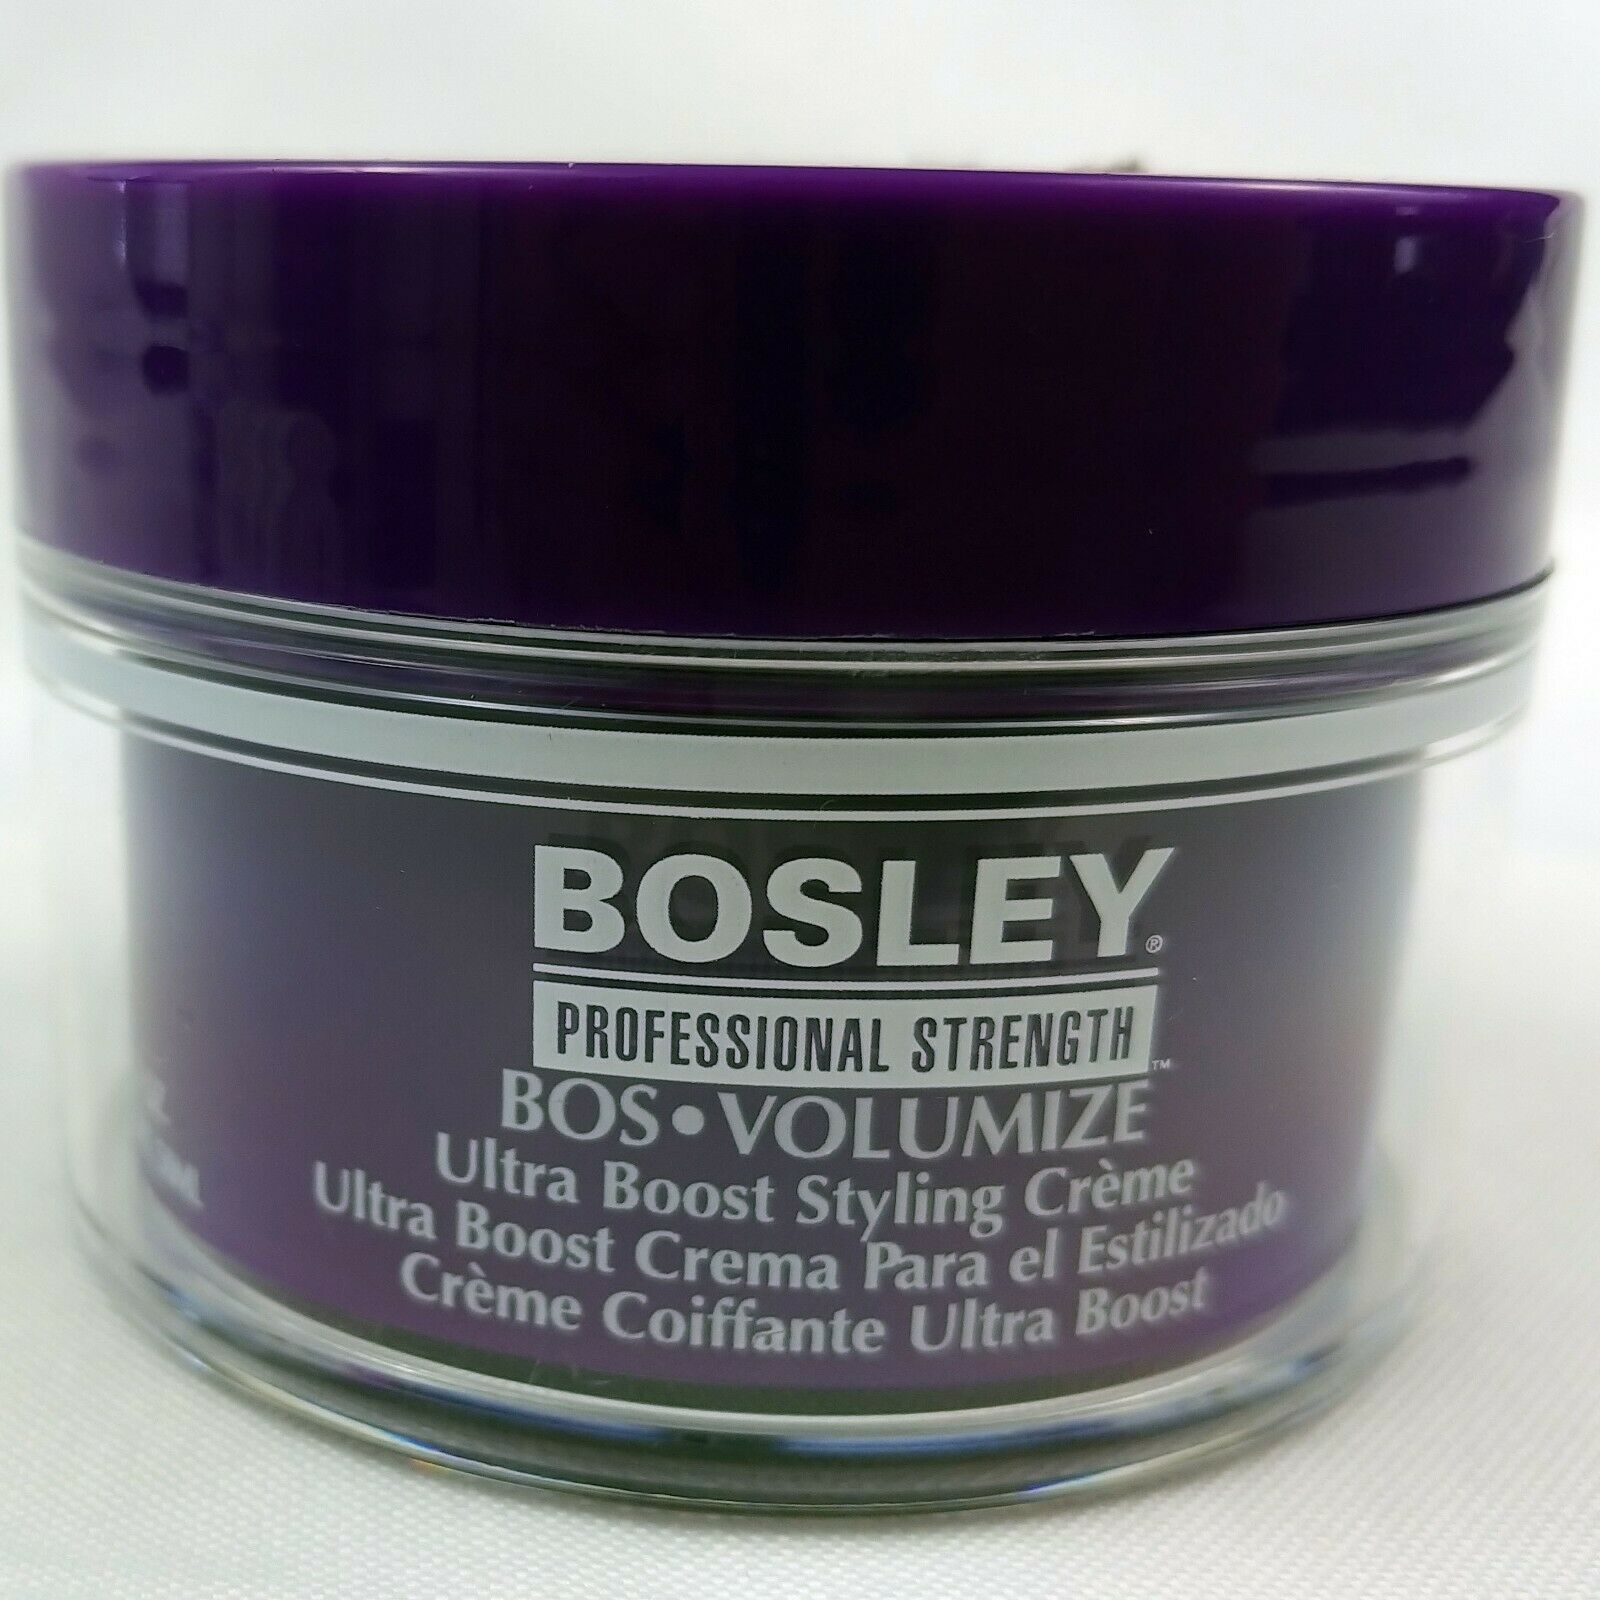 Bosley Ultra Boost Styling Creme 1.7 oz Jar Semi Matte Texture Volumizing - $13.85